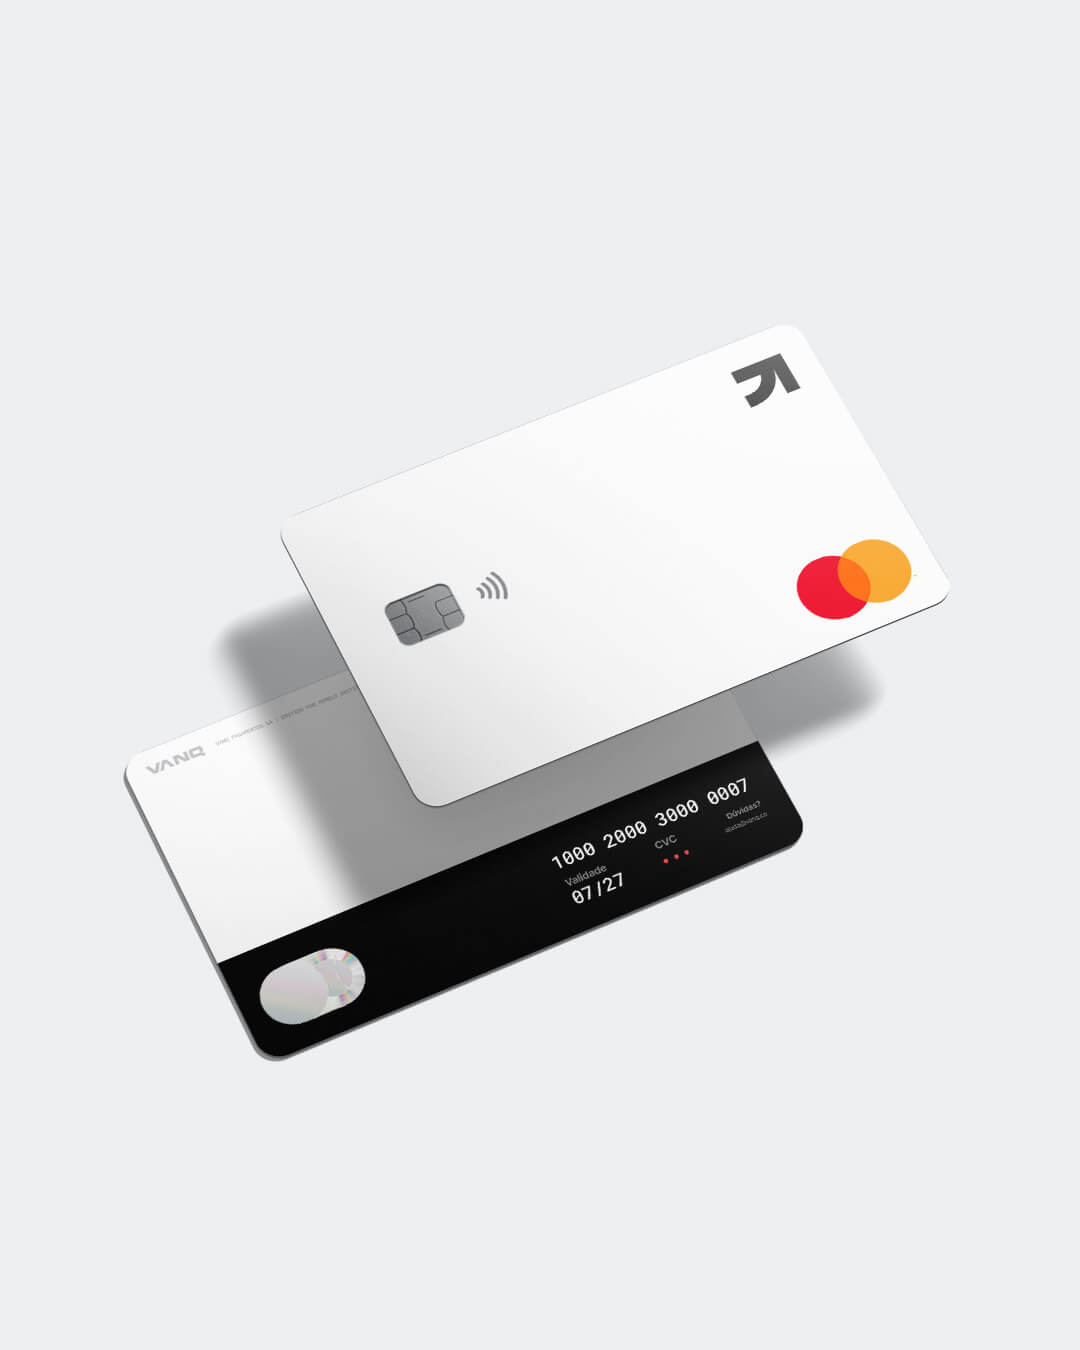 Telefone celular na mão esquerda com a tela de pagamentos combinados mostrando a configuração de cobrança em cada cartão do usuário.